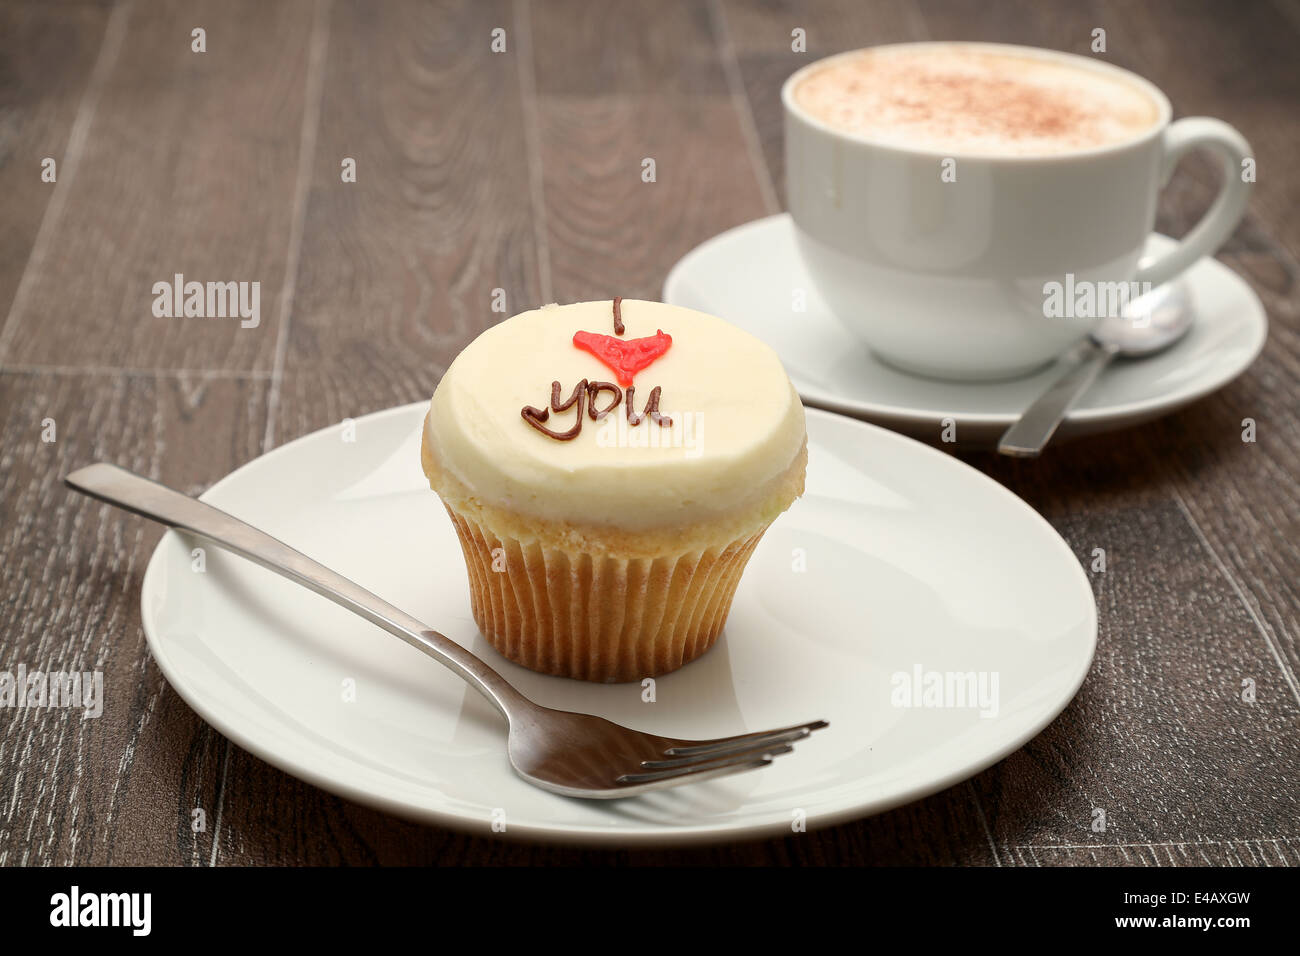 Una tortina guarnita con crema di burro la glassa con il messaggio "ti amo" , servita con un cappuccini, studio shoot Foto Stock